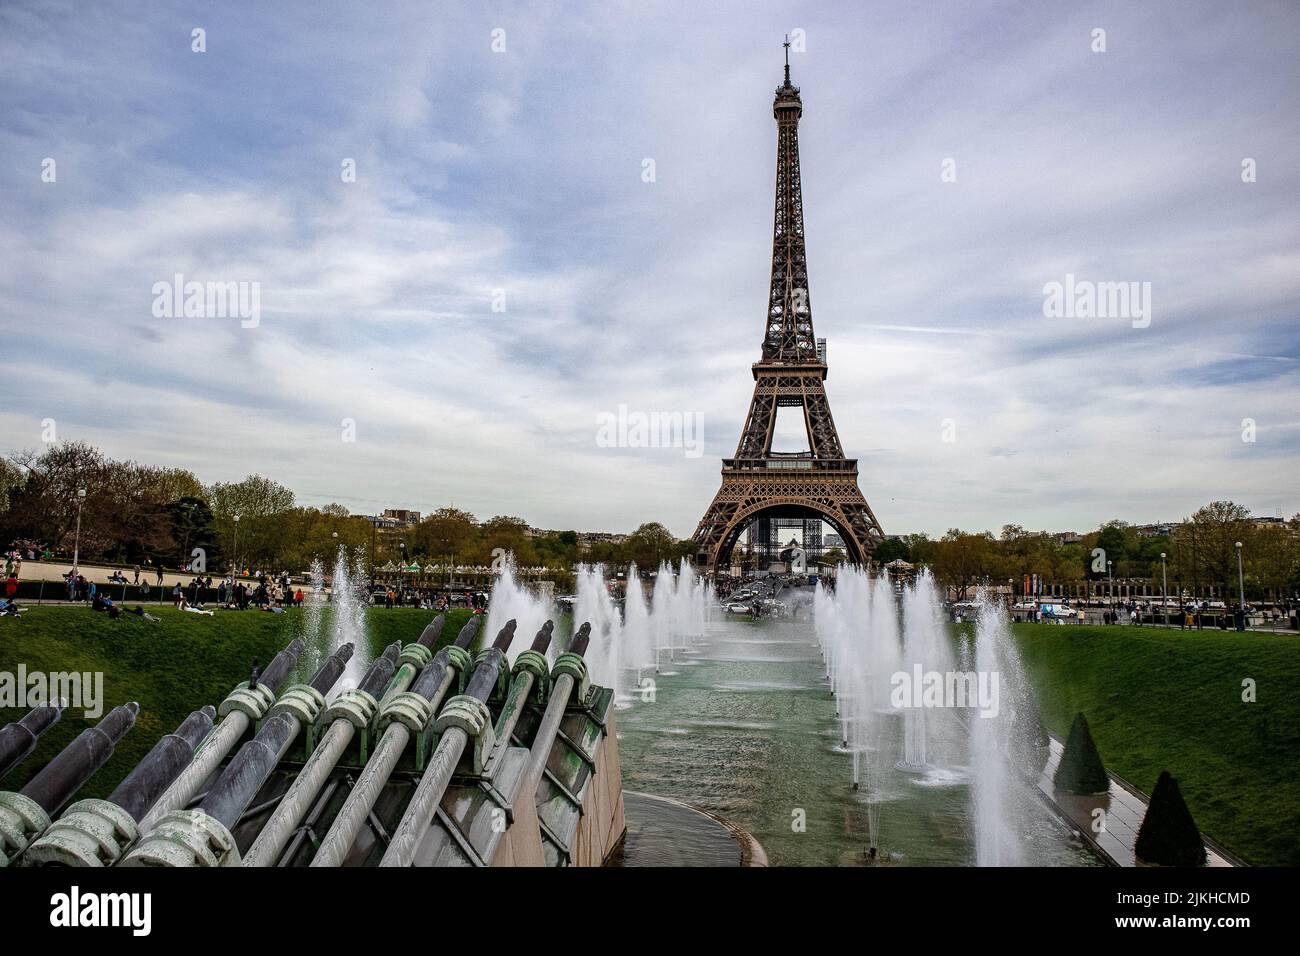 Una località turistica famosa in tutto il mondo - la Torre Eiffel a Parigi, Francia Foto Stock